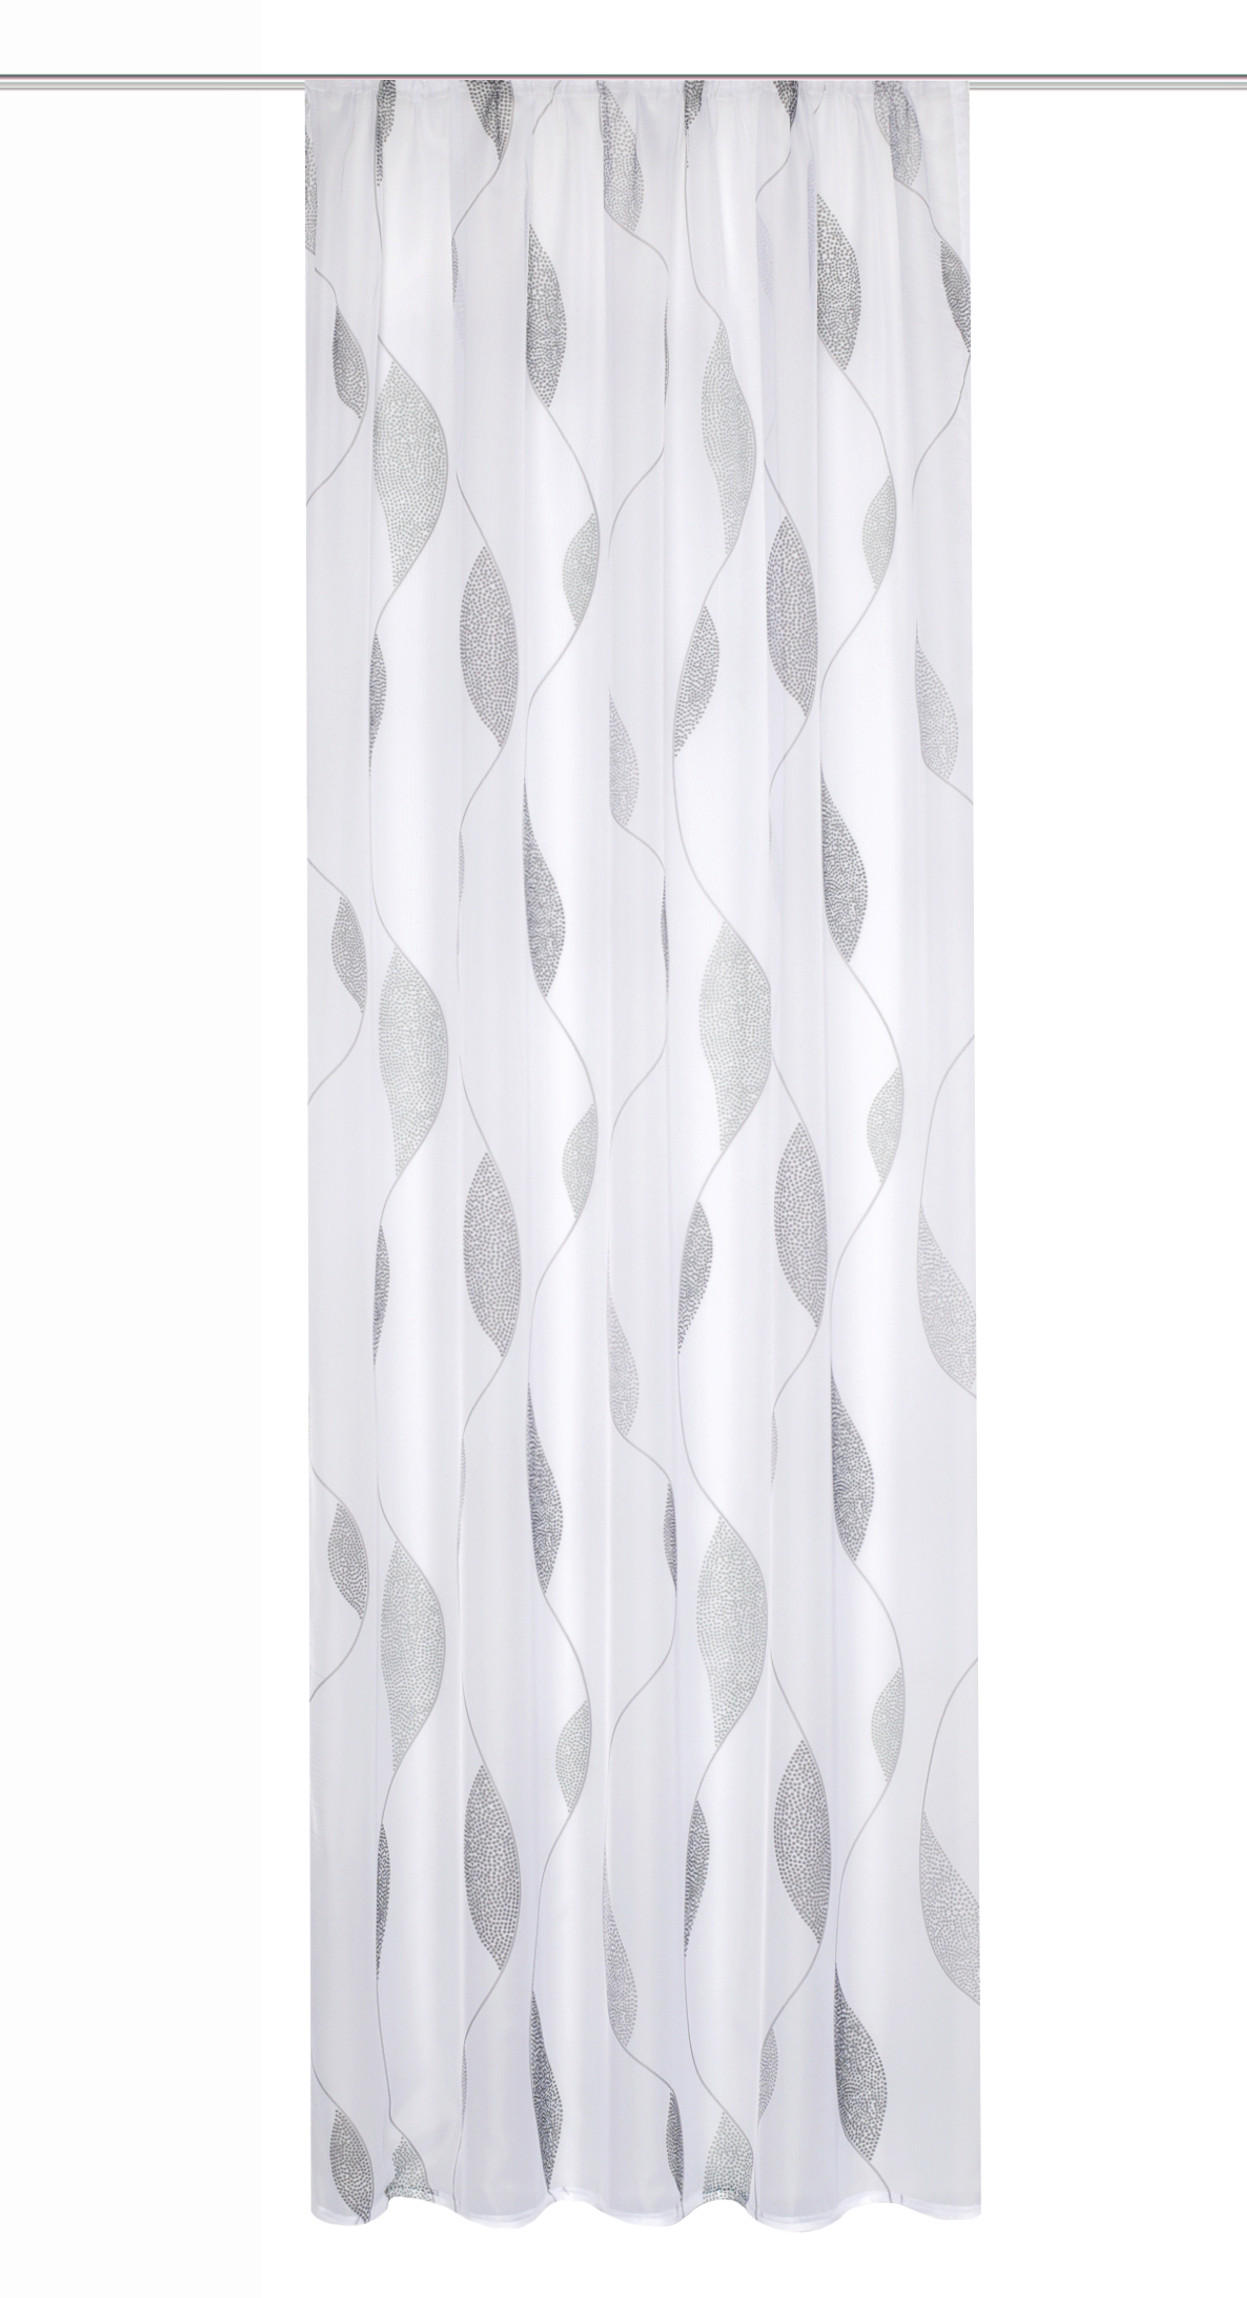 FERTIGVORHANG PAOLO transparent 140/145 cm   - Taupe, KONVENTIONELL, Textil (140/145cm) - Schmidt W. Gmbh